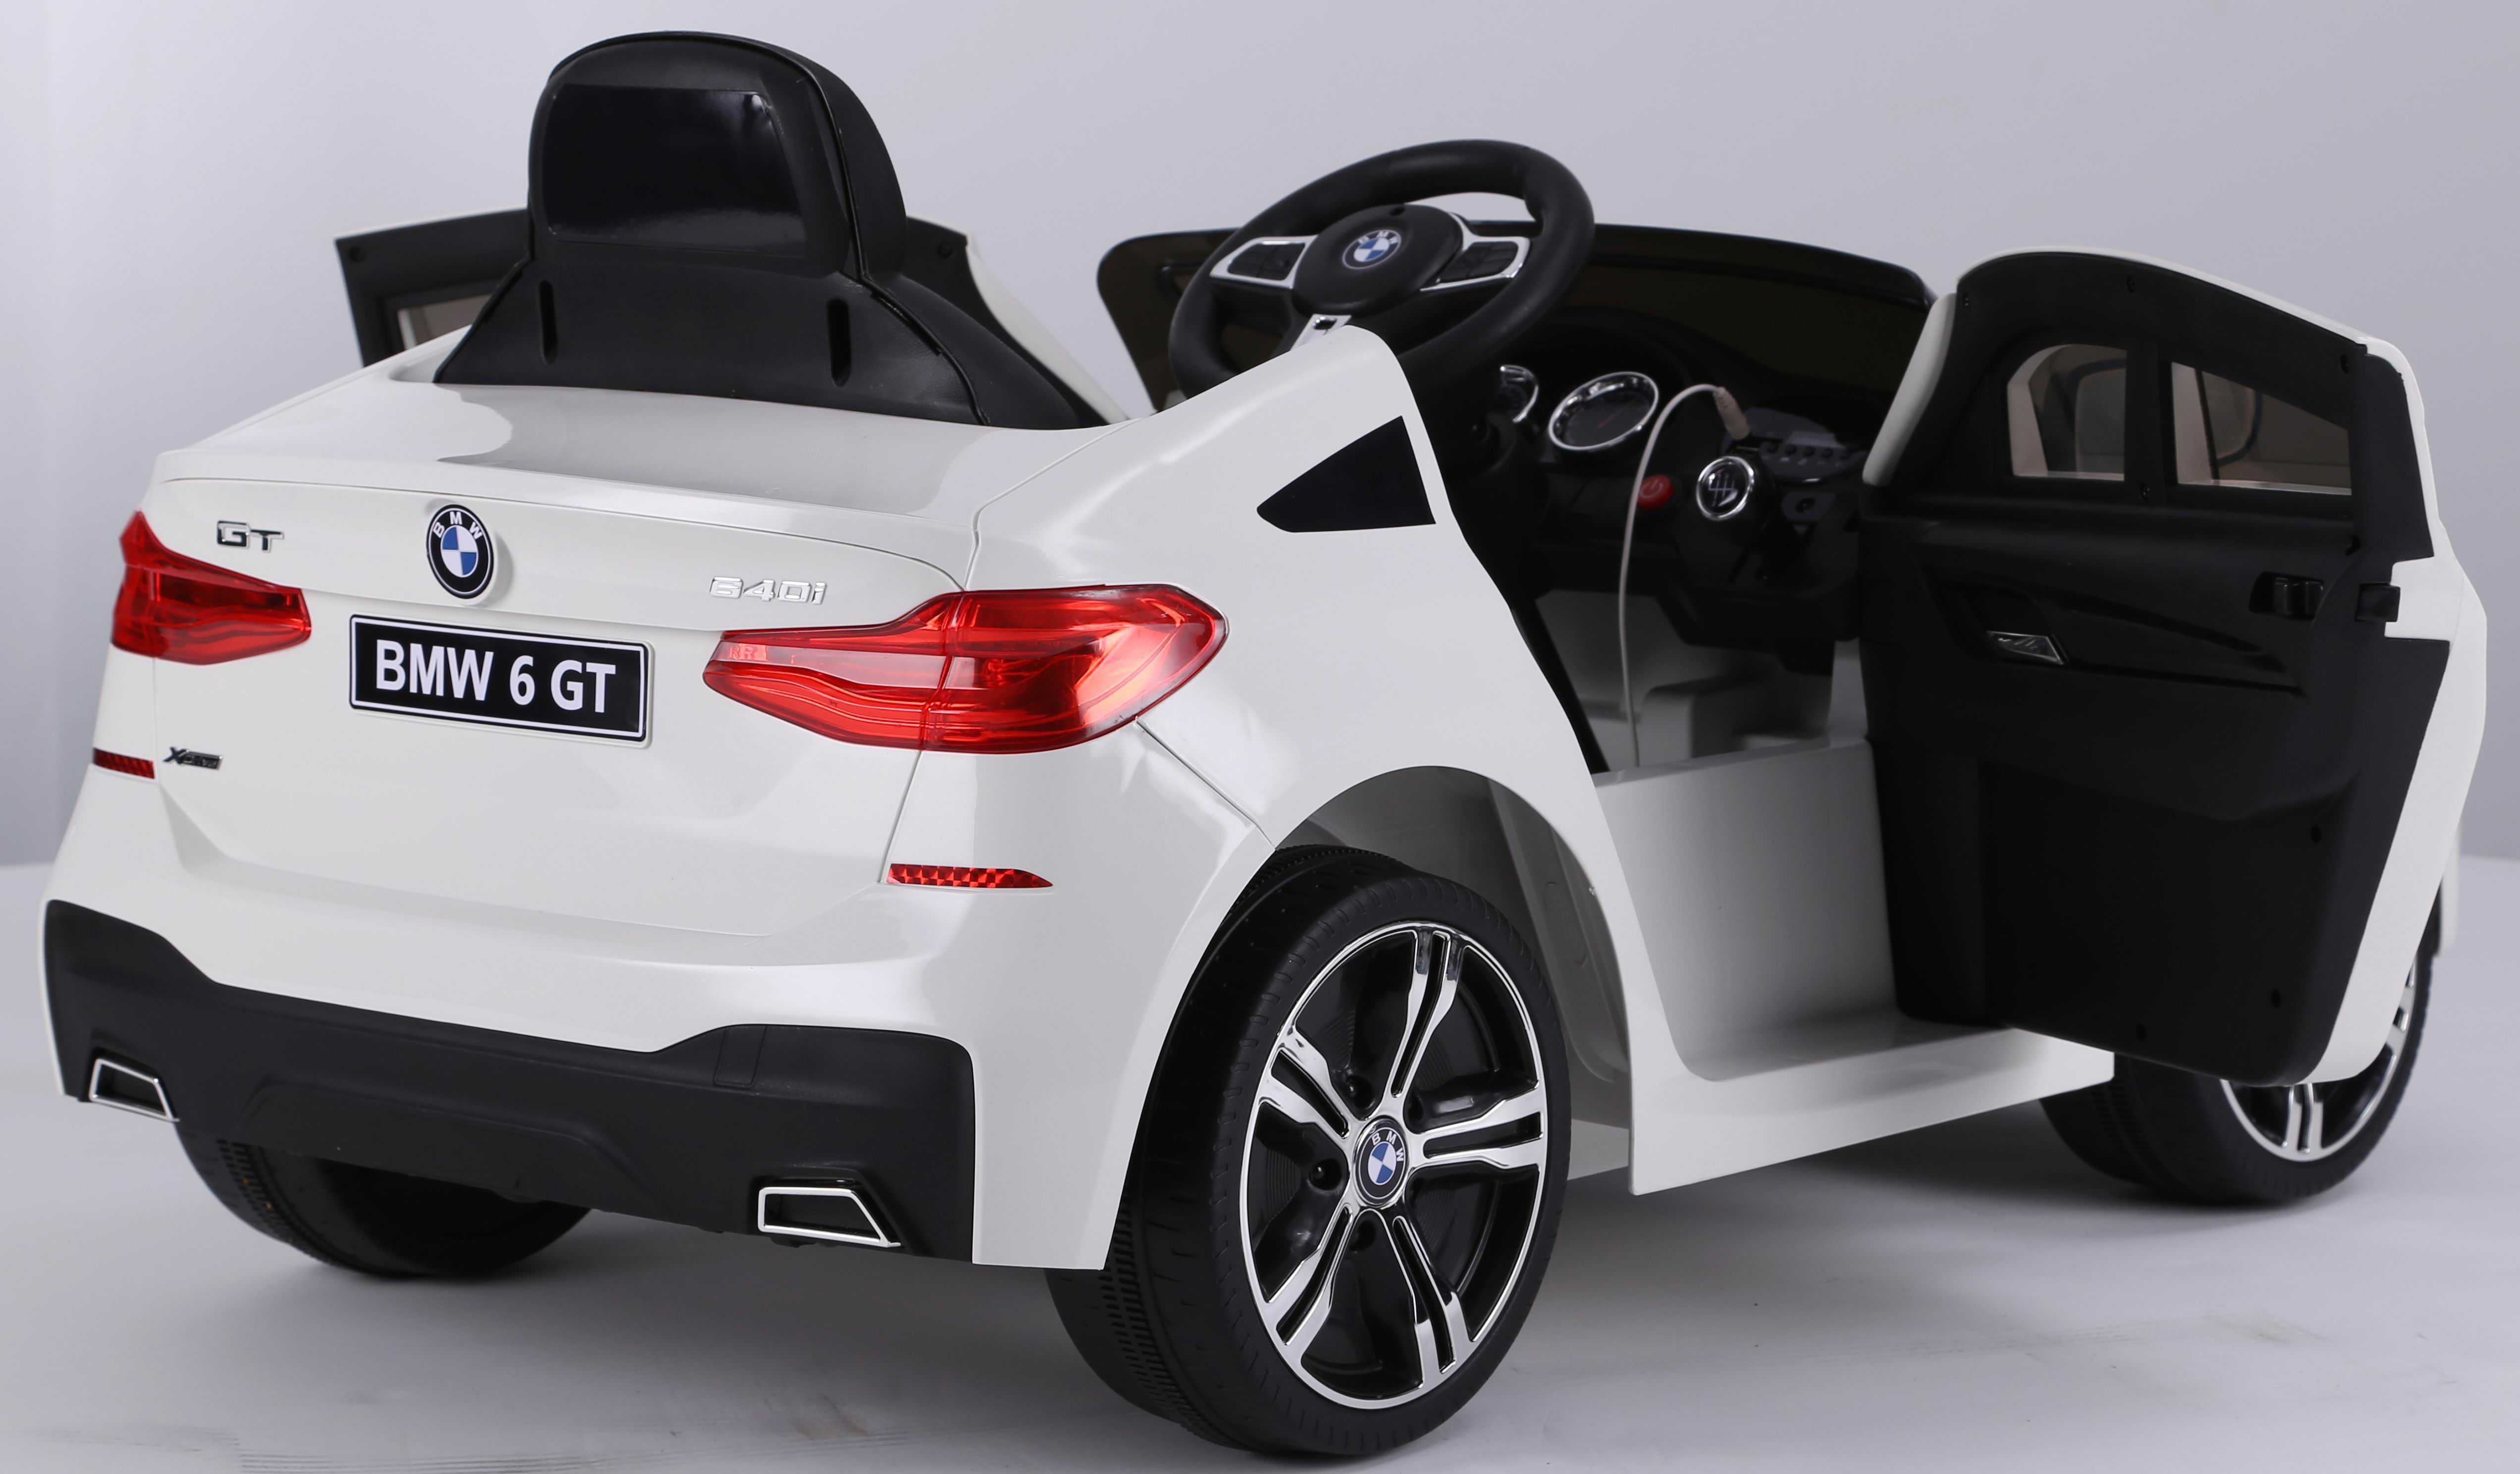 Masinuta electrica pentru copi BMW seria 6 GT rosie. Garantie